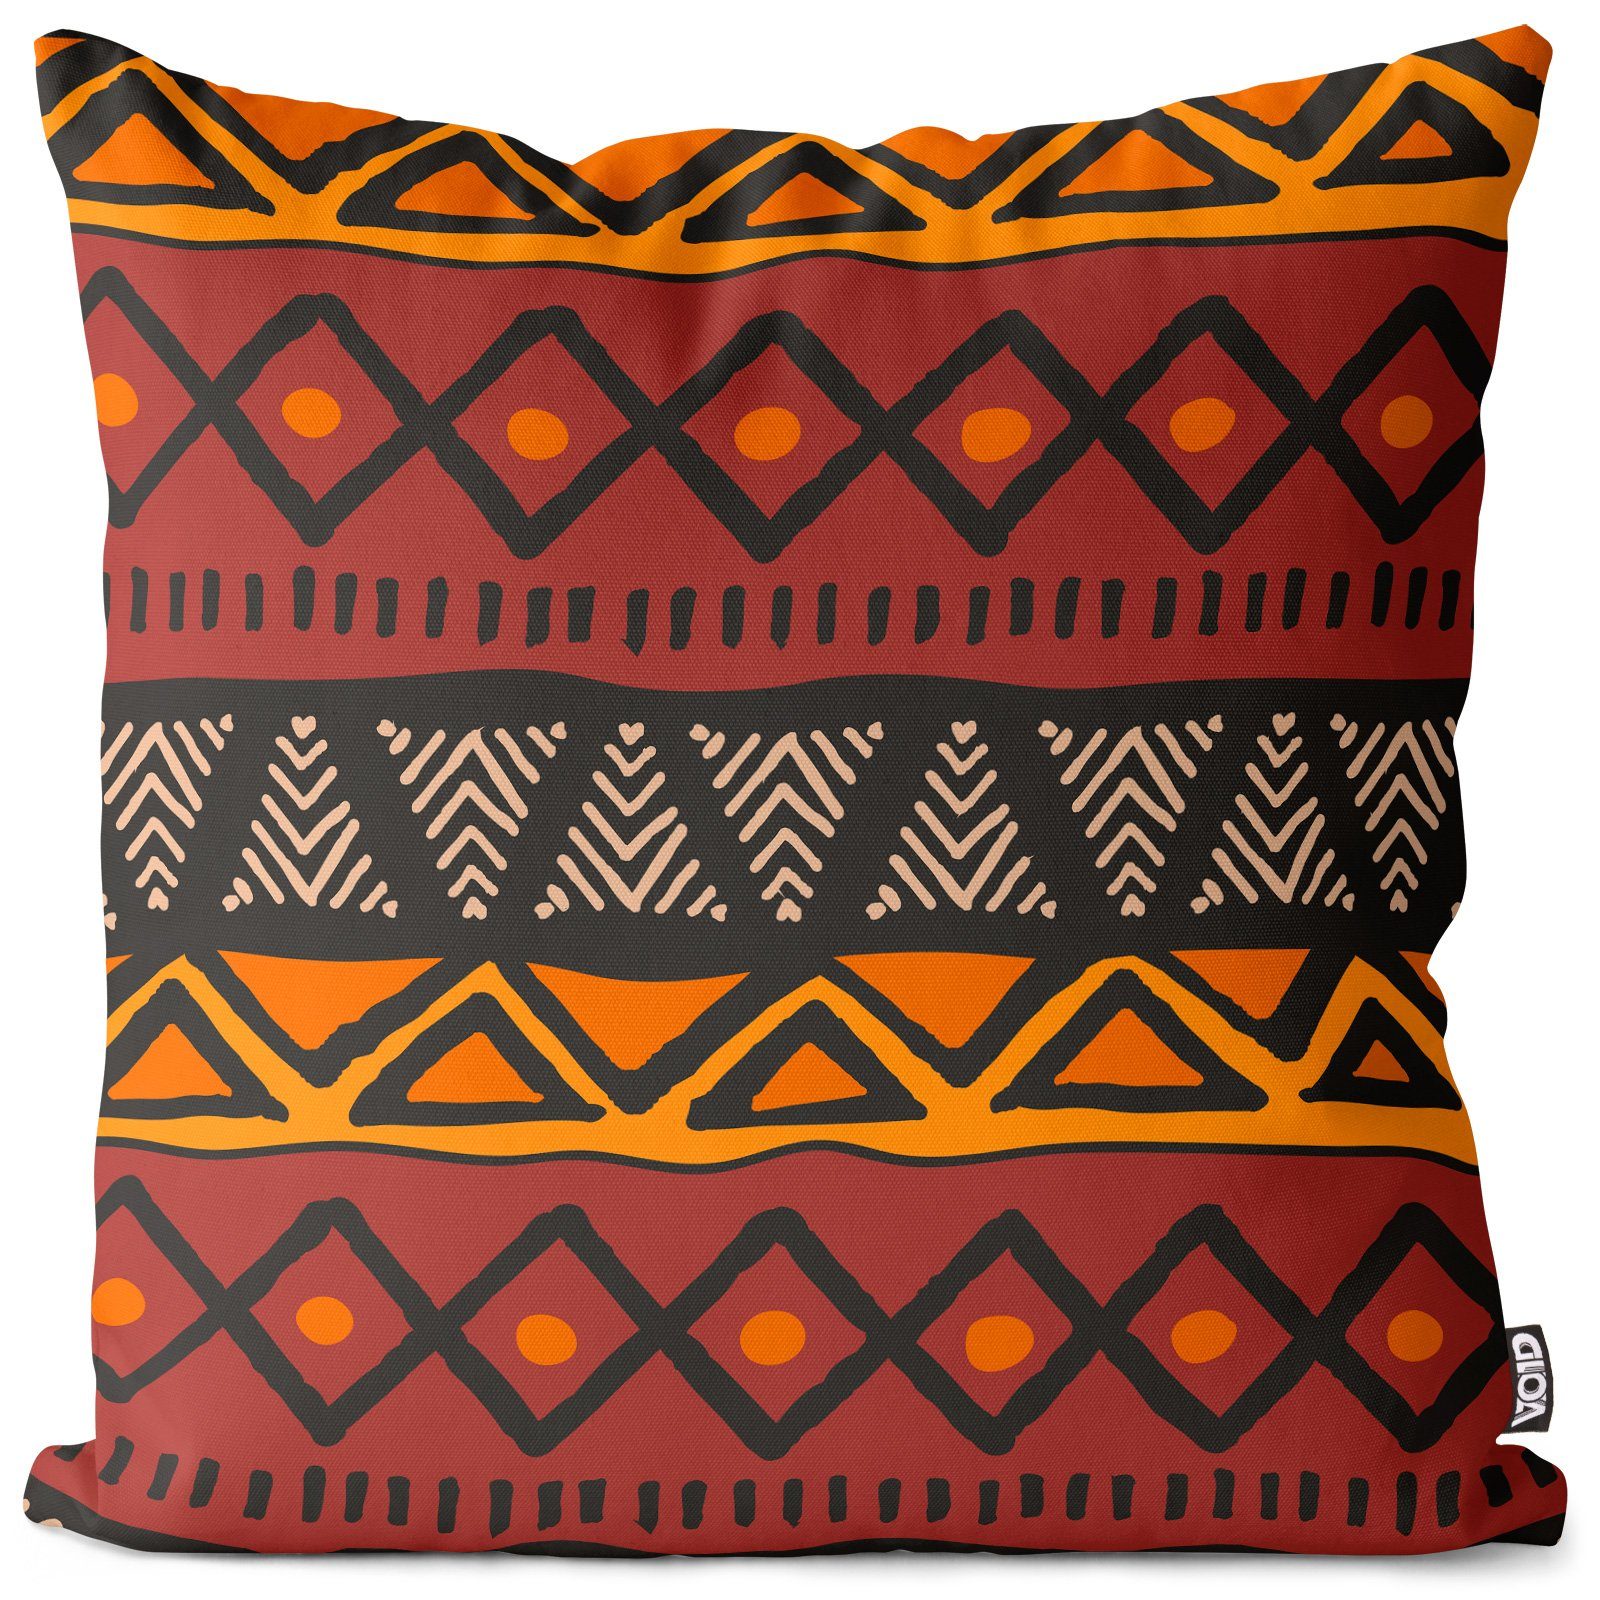 Linie natürlich VOID India global (1 geometrisch muster textur minimal Sofa-Kissen volk Ost afrikanisch Stück), tribal welt ethnisch Dreieck abstrakt Kissenbezug, ornament